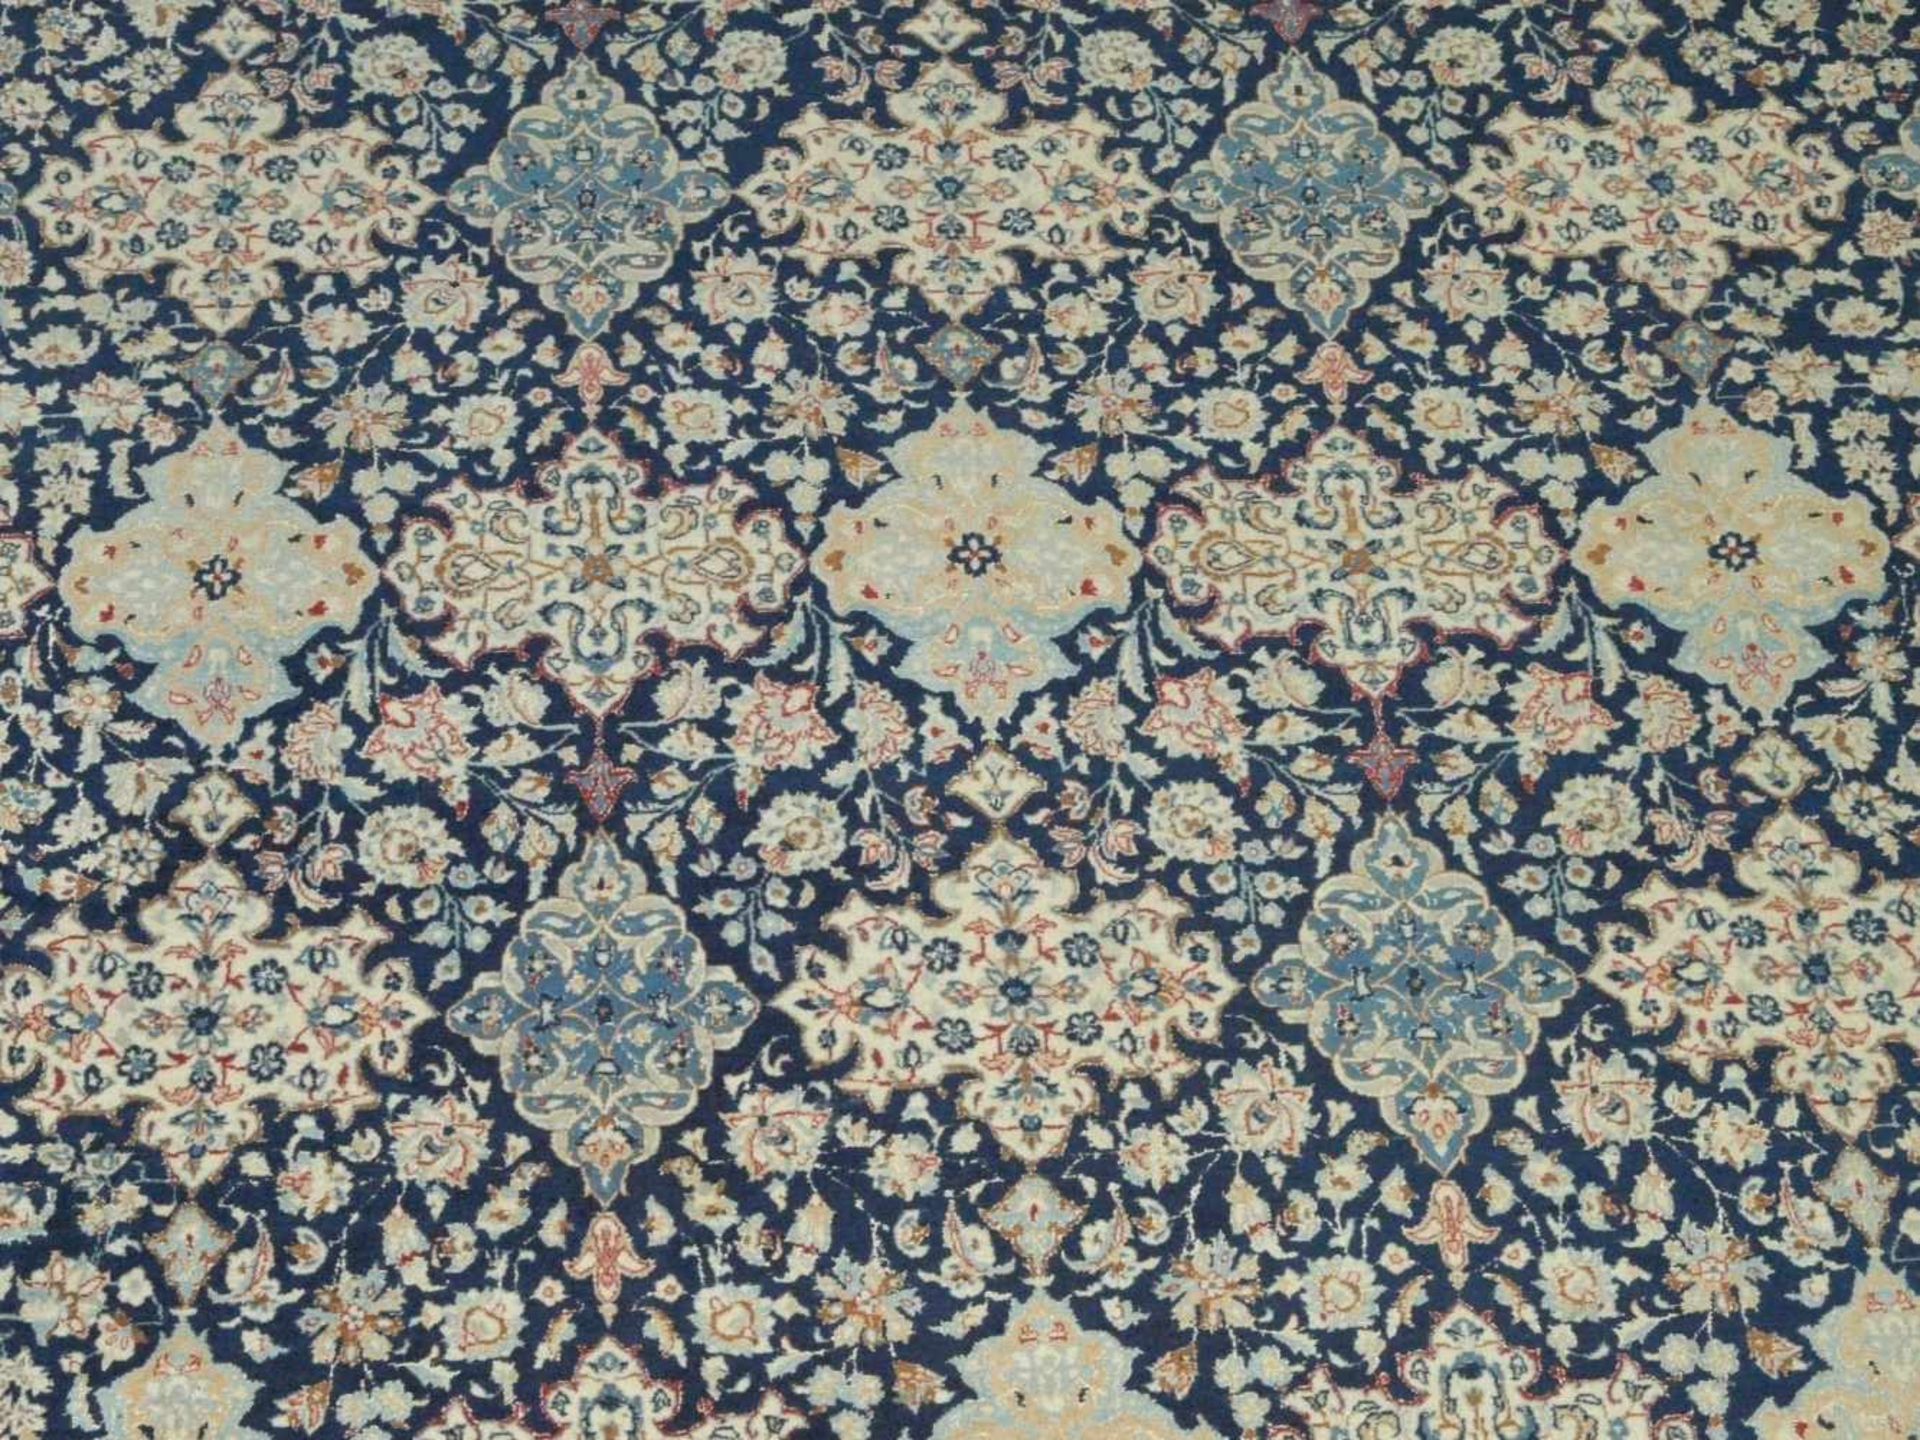 OrientteppichGroßer Teppich mit Wollflor. Blau-beige Farbigkeit, breite Bordüre und orientalisches - Bild 2 aus 3